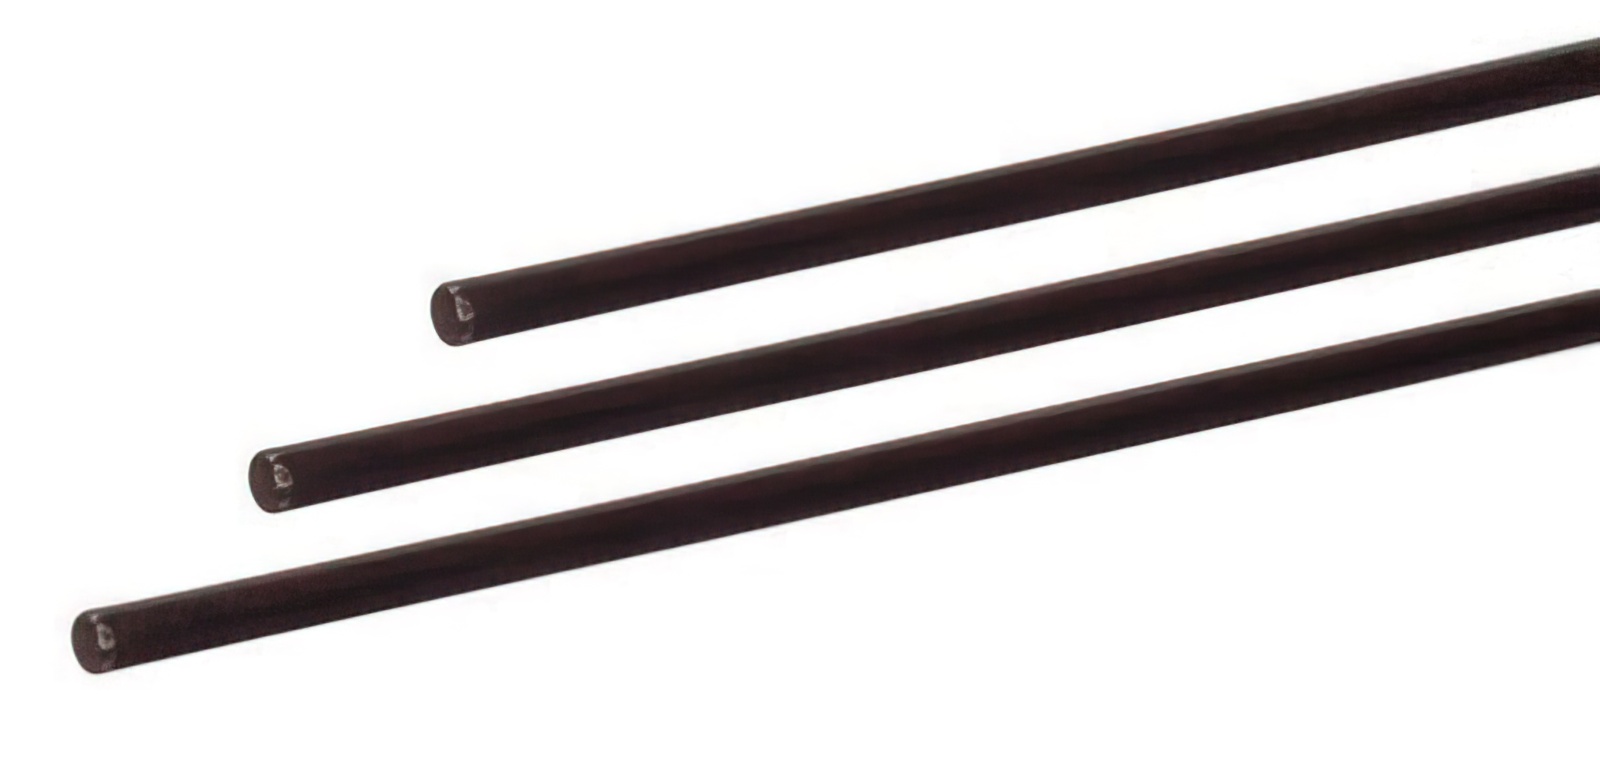 5 Stück - Gfk-Vollstab (Fiberglasstab/Glasfaserstab) 6  mm 100 cm schwarz für Drachen- und Modellbau Basteln Montagen Messebau Industrie Haushalt